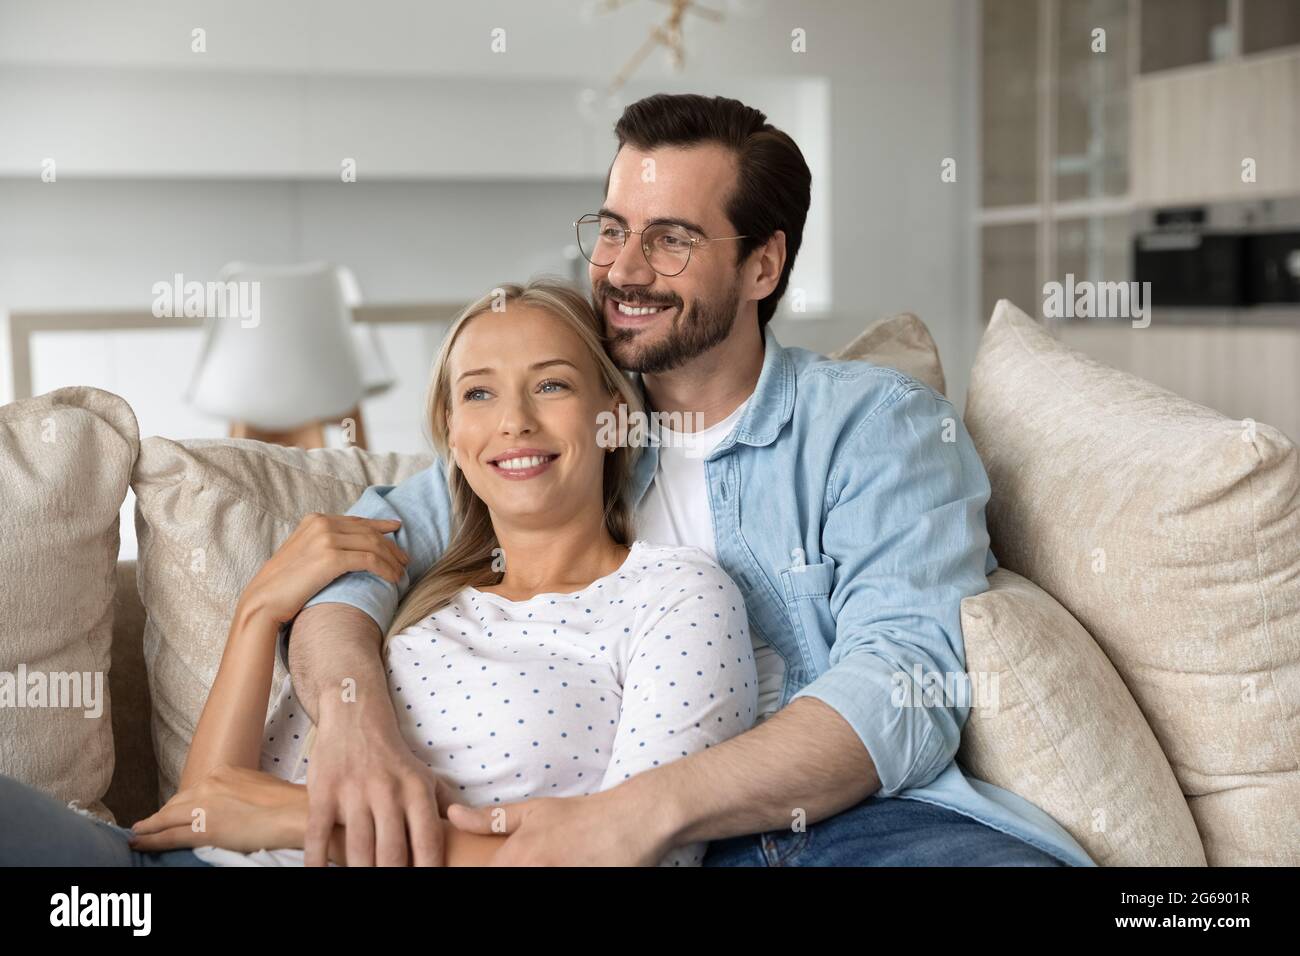 Un jeune couple heureux et rêveur qui s'embrasse, se détendant sur un canapé ensemble Banque D'Images